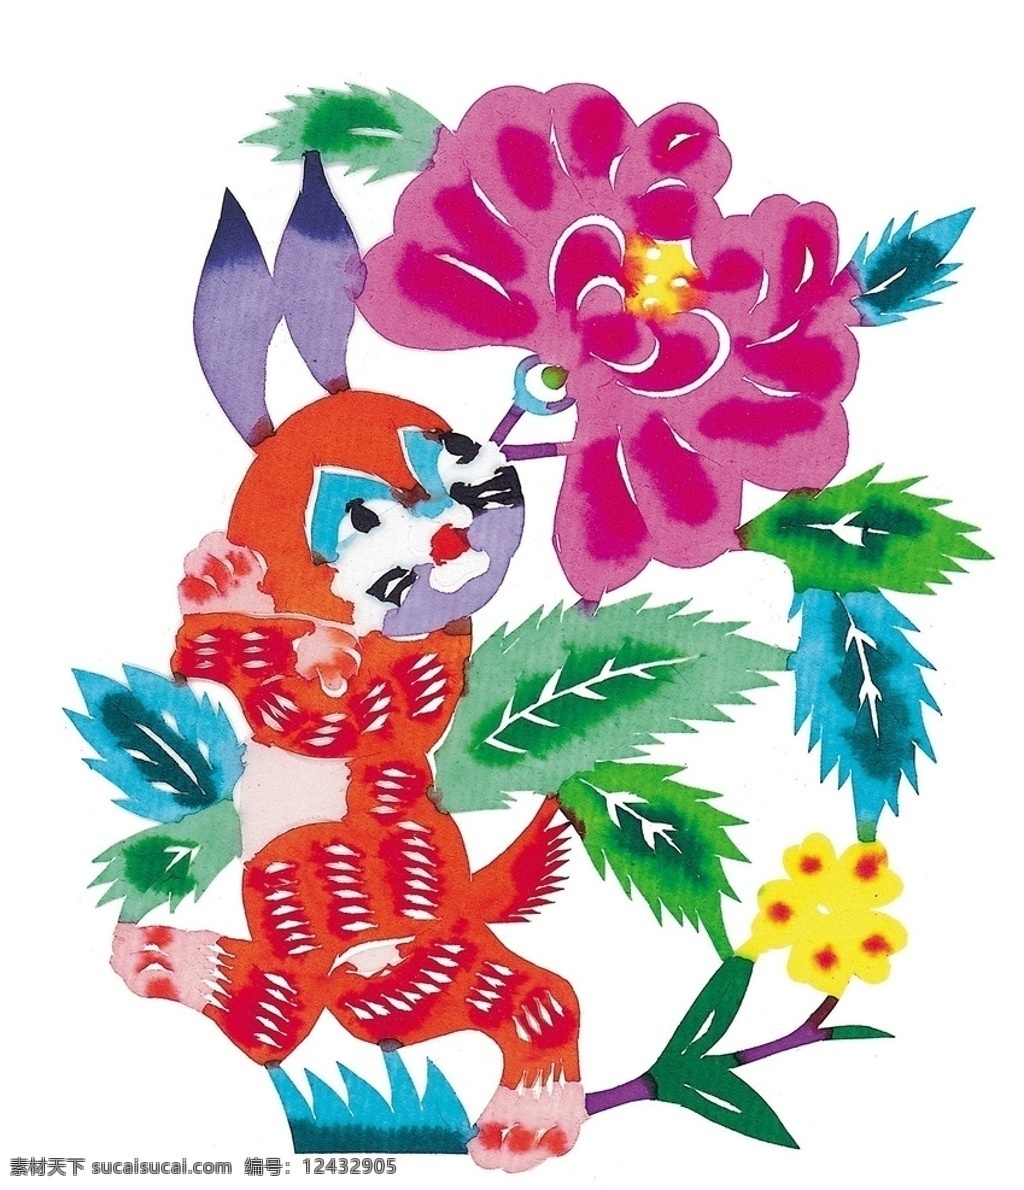 剪纸兔 剪纸 艺术 插画 卡通 插图 传统艺术 图案 彩色 生肖 鲜花 花卉 花朵 剪纸艺术 文化艺术 传统文化